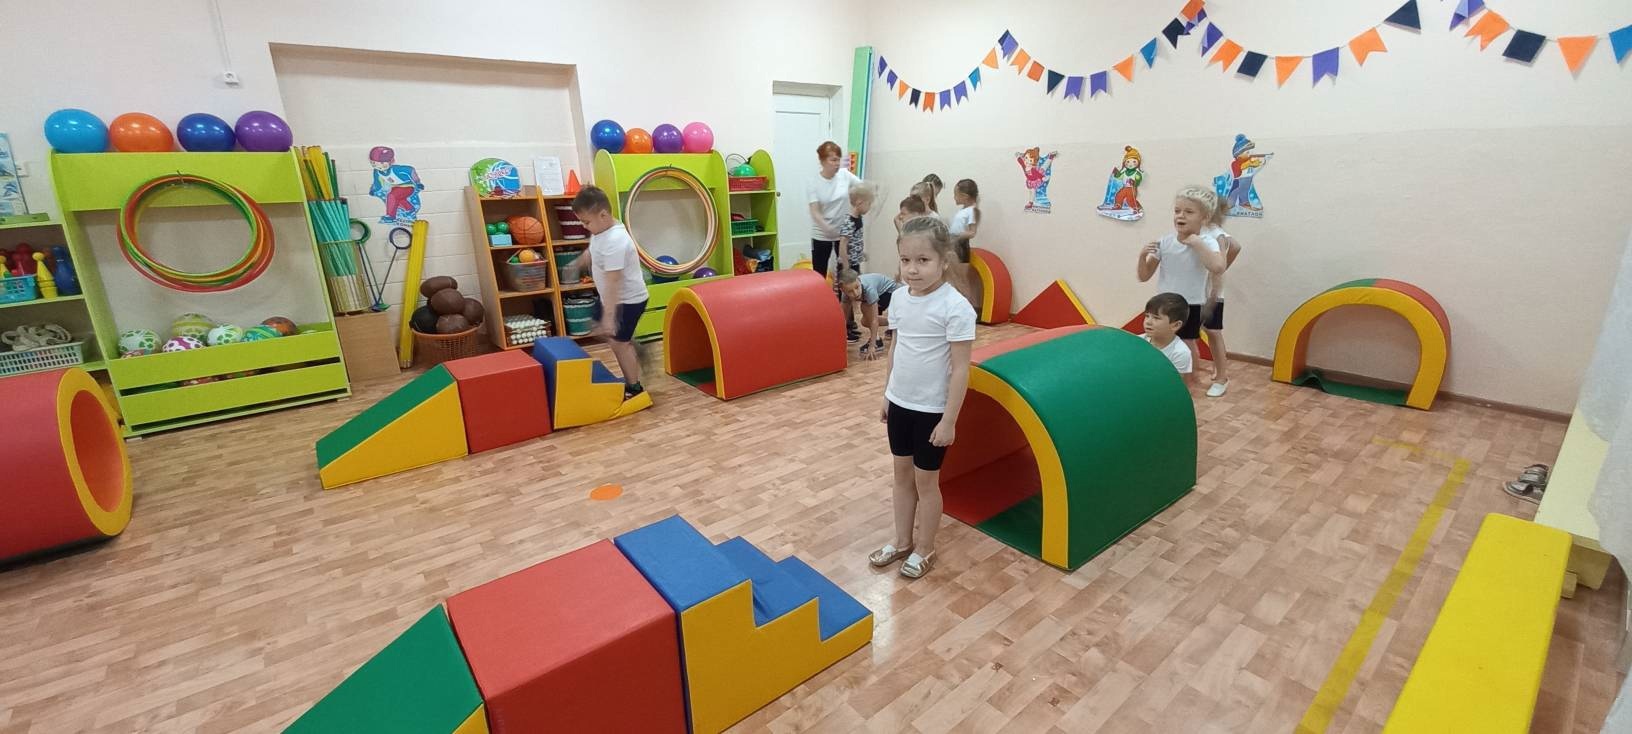 Грант ЛУКОЙЛа помог оборудовать спортзал в печорском детском саду